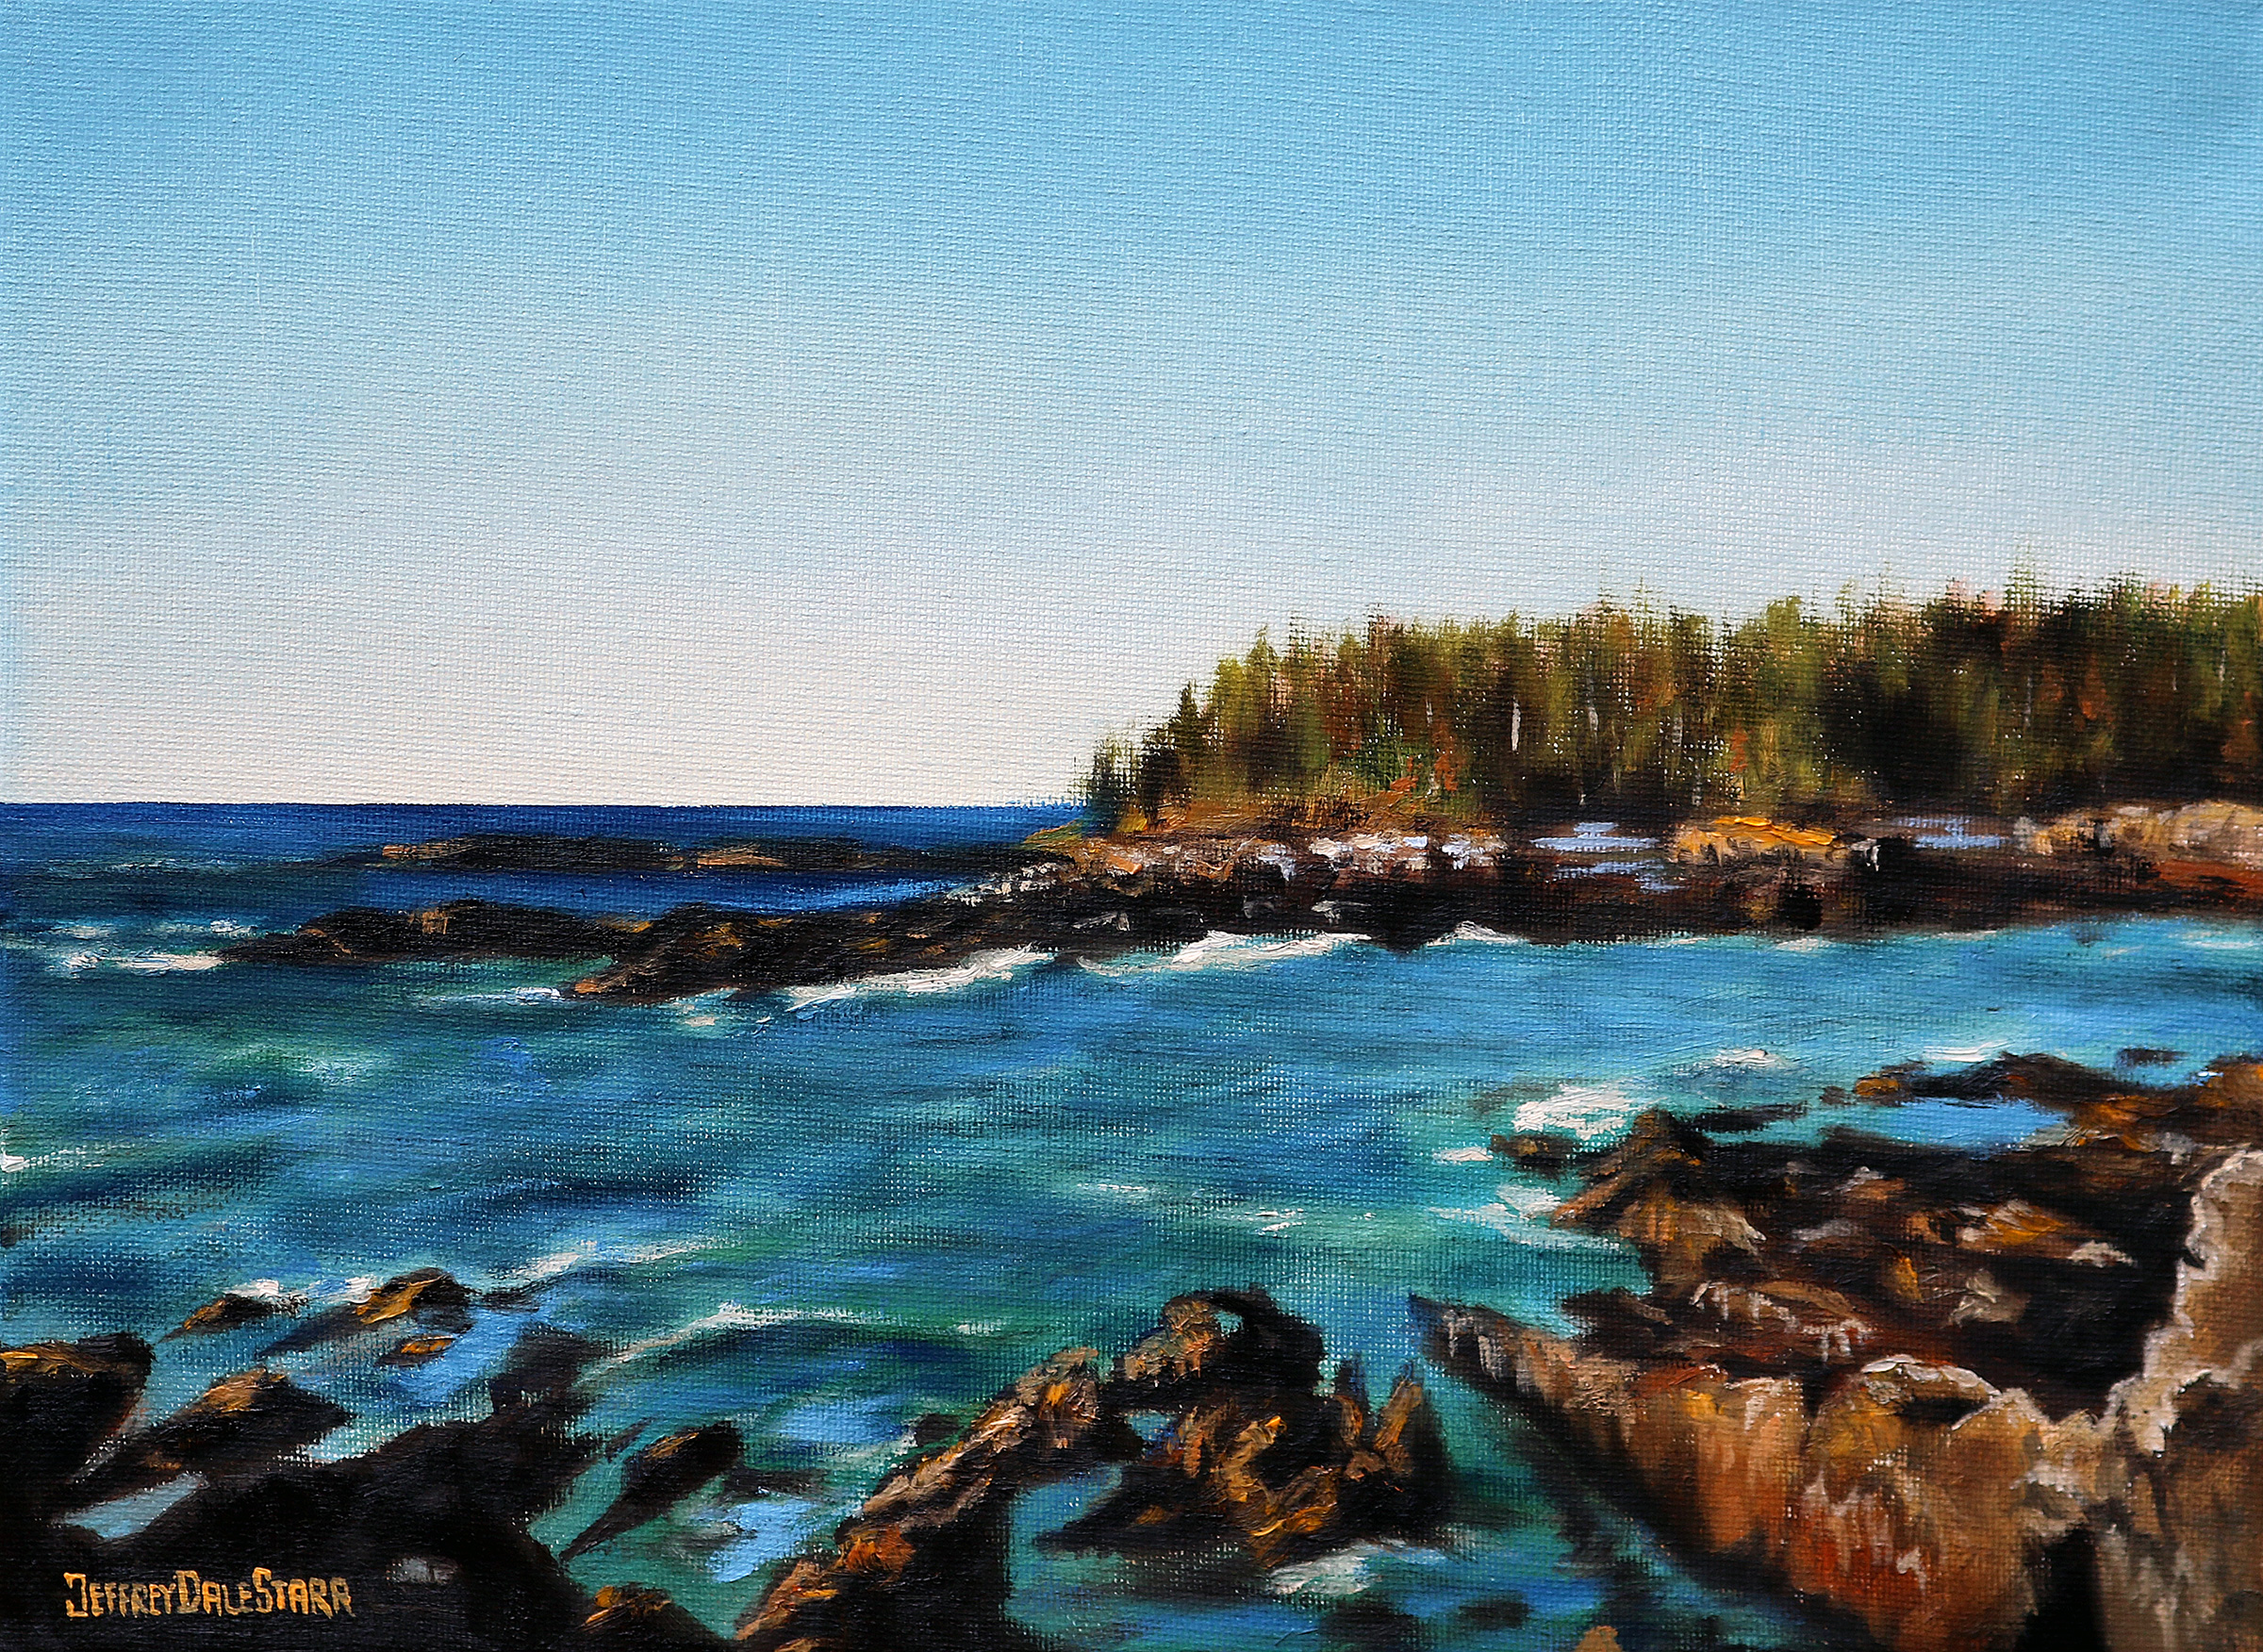 Oil painting "Rocky Maine Coastline" by Jeffrey Dale Starr